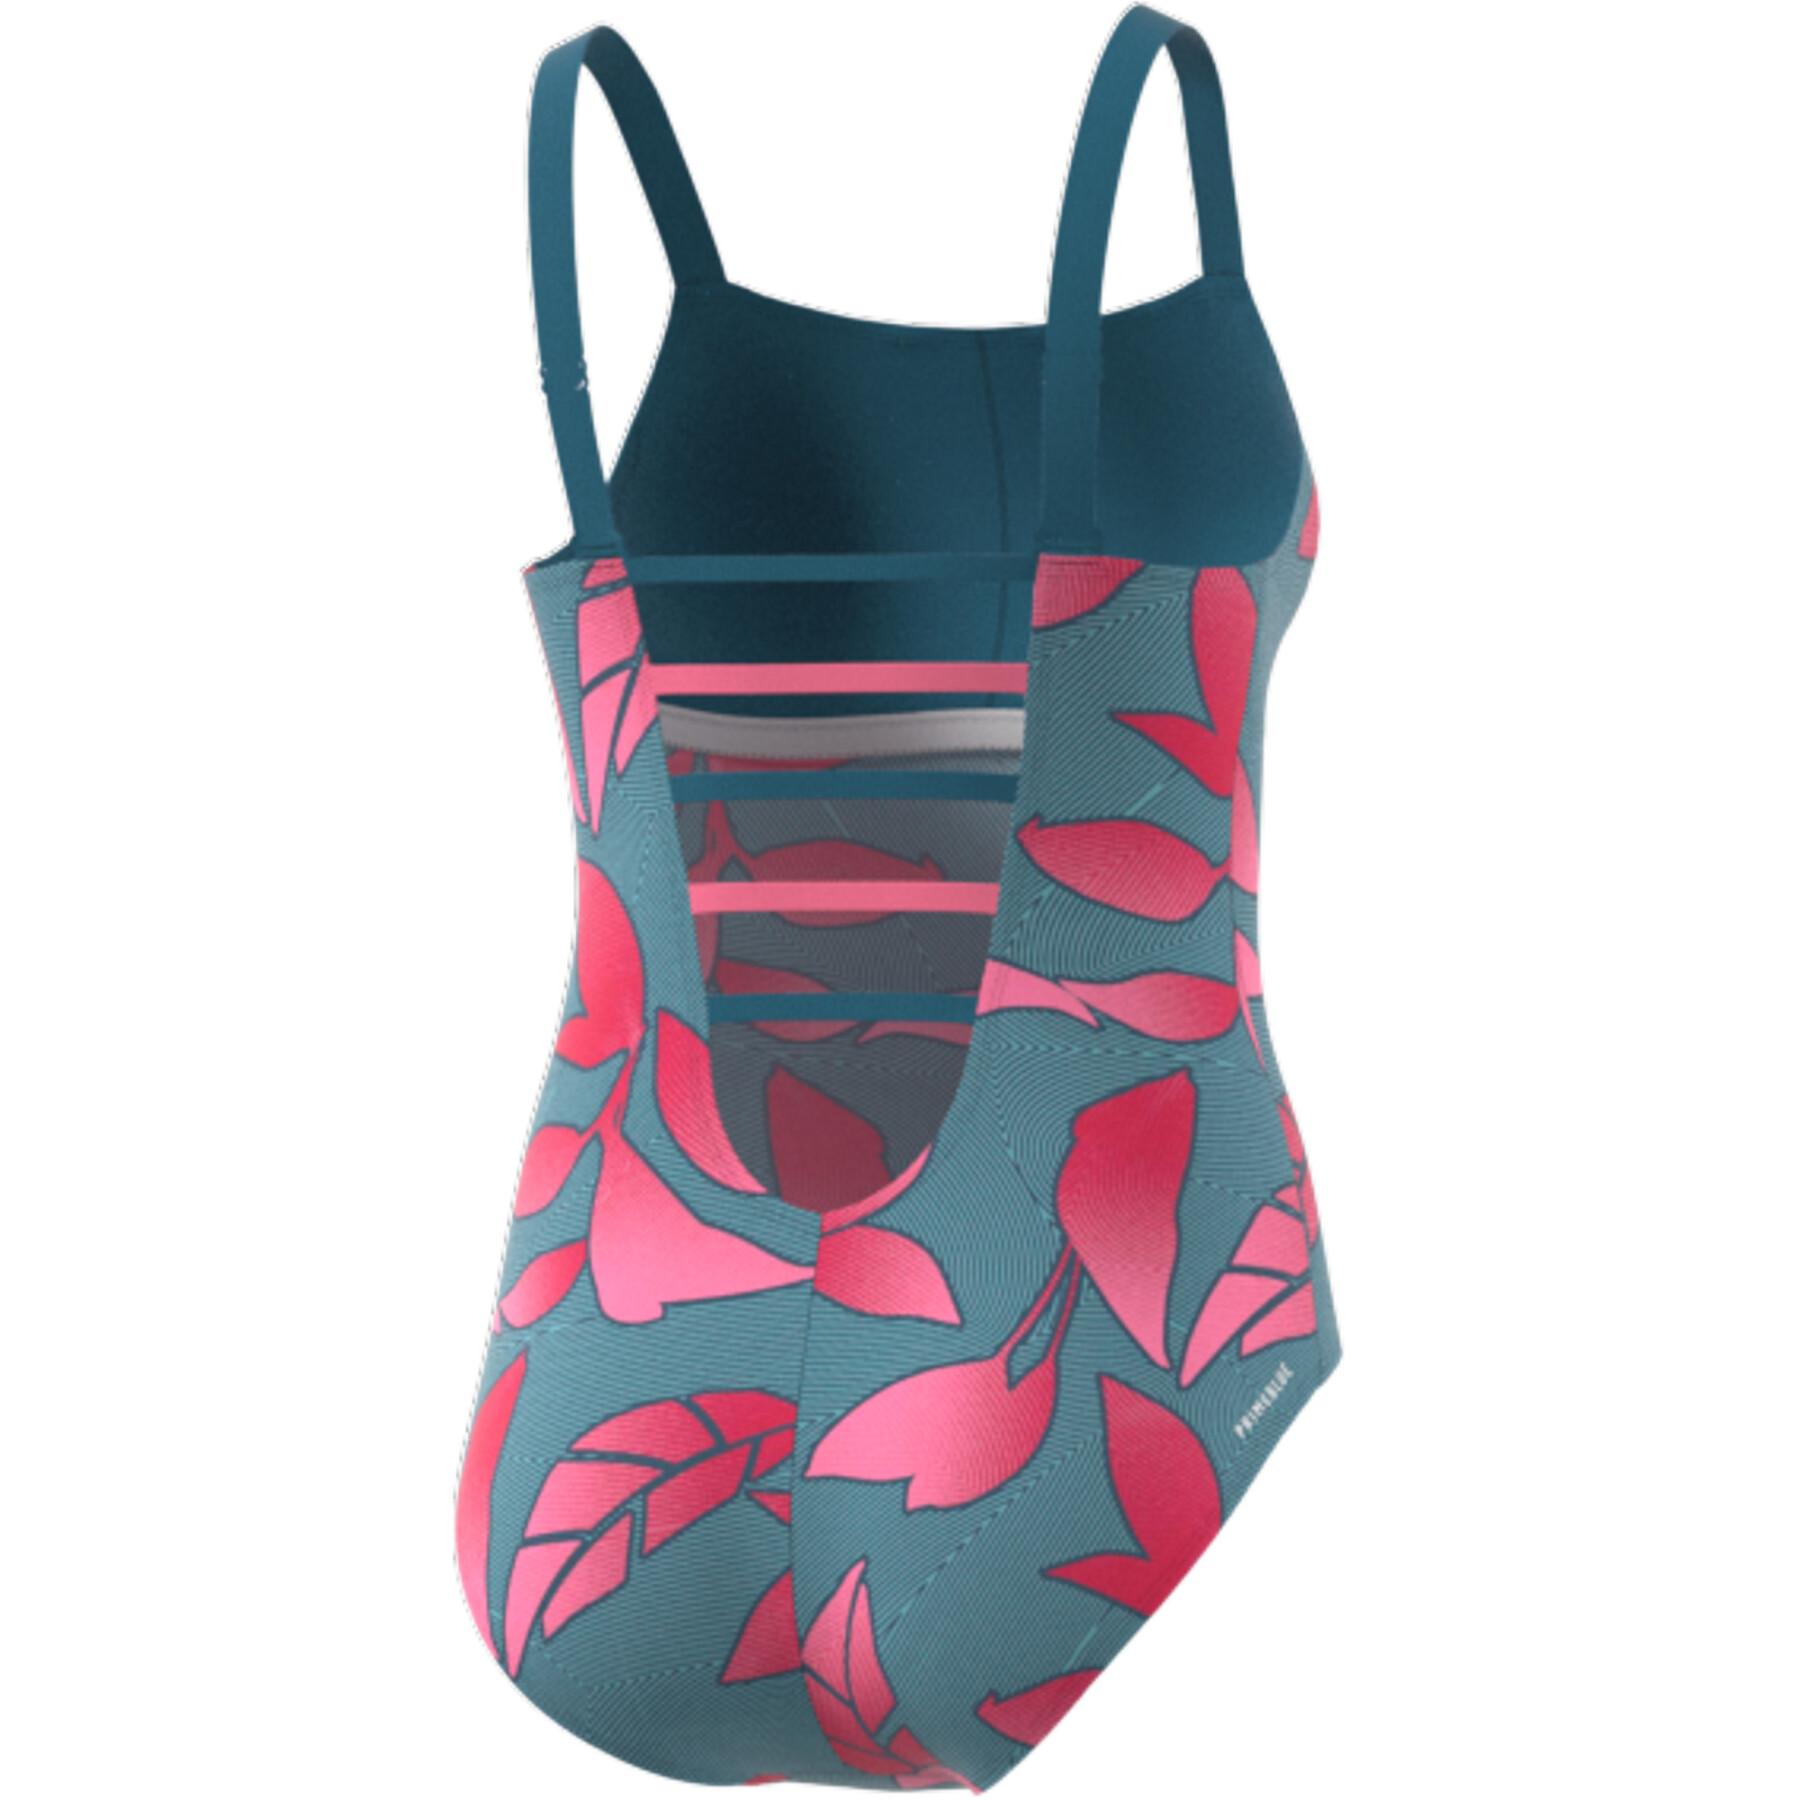 Women's swimsuit adidas SH3.RO Nature